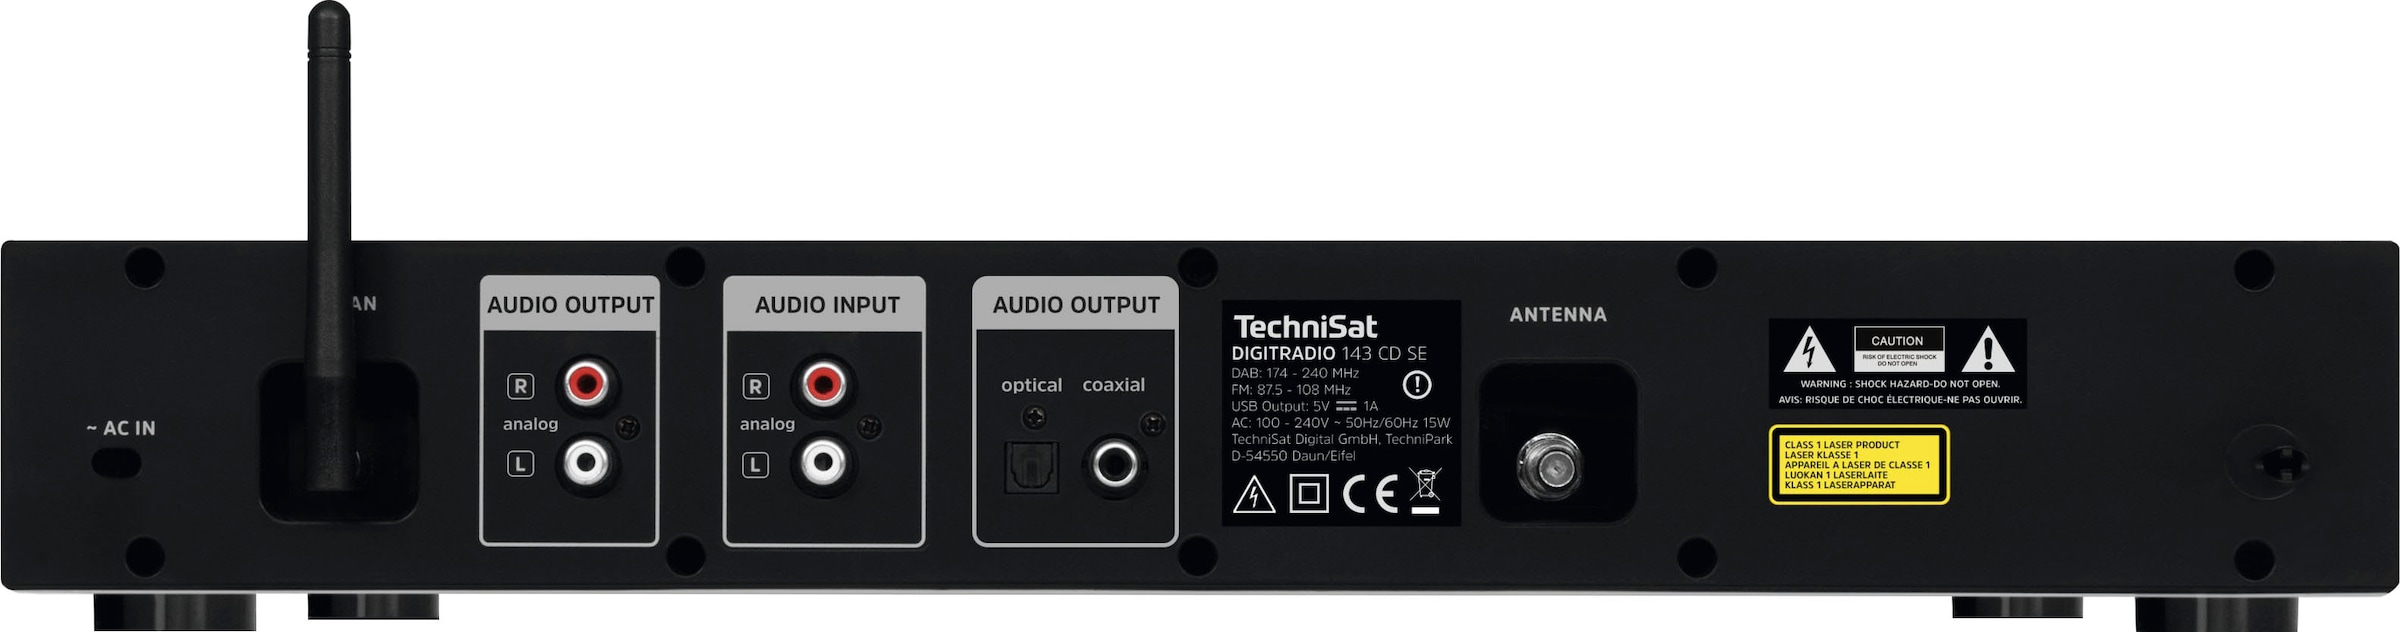 143 OTTO bestellen mit (DAB+) CD TechniSat jetzt Digitalradio bei »DIGITRADIO Internetradio-Digitalradio (Bluetooth-WLAN (V3)«, RDS) (DAB+)-UKW